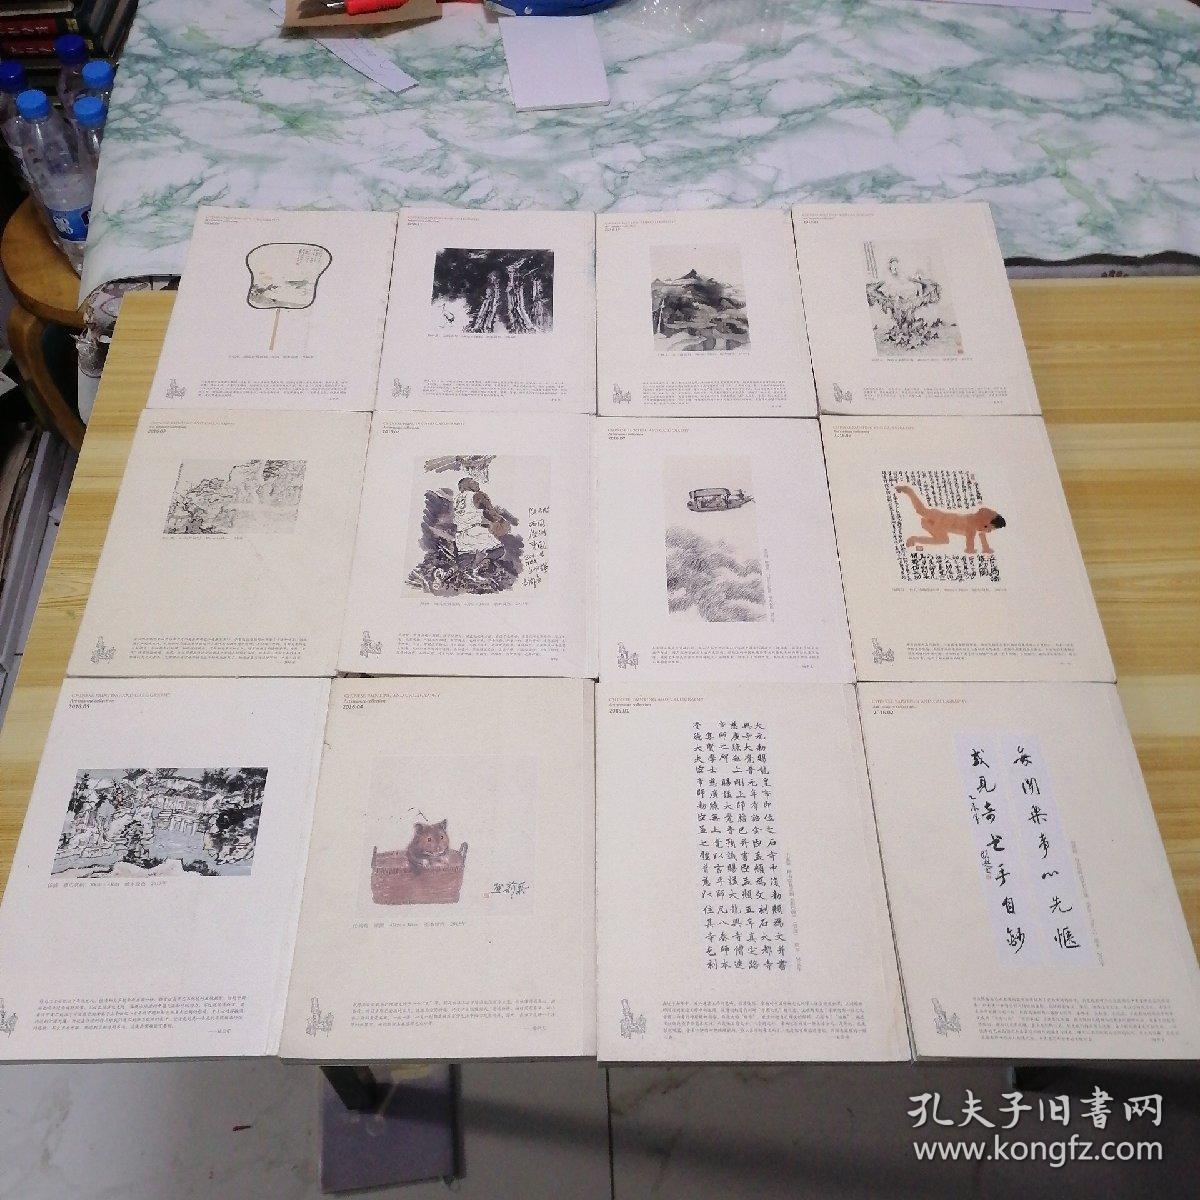 中国书画2016年第1-12期缺第一期共11本合售 副刊1-12期全  共计23本合售。内部有赠品见图